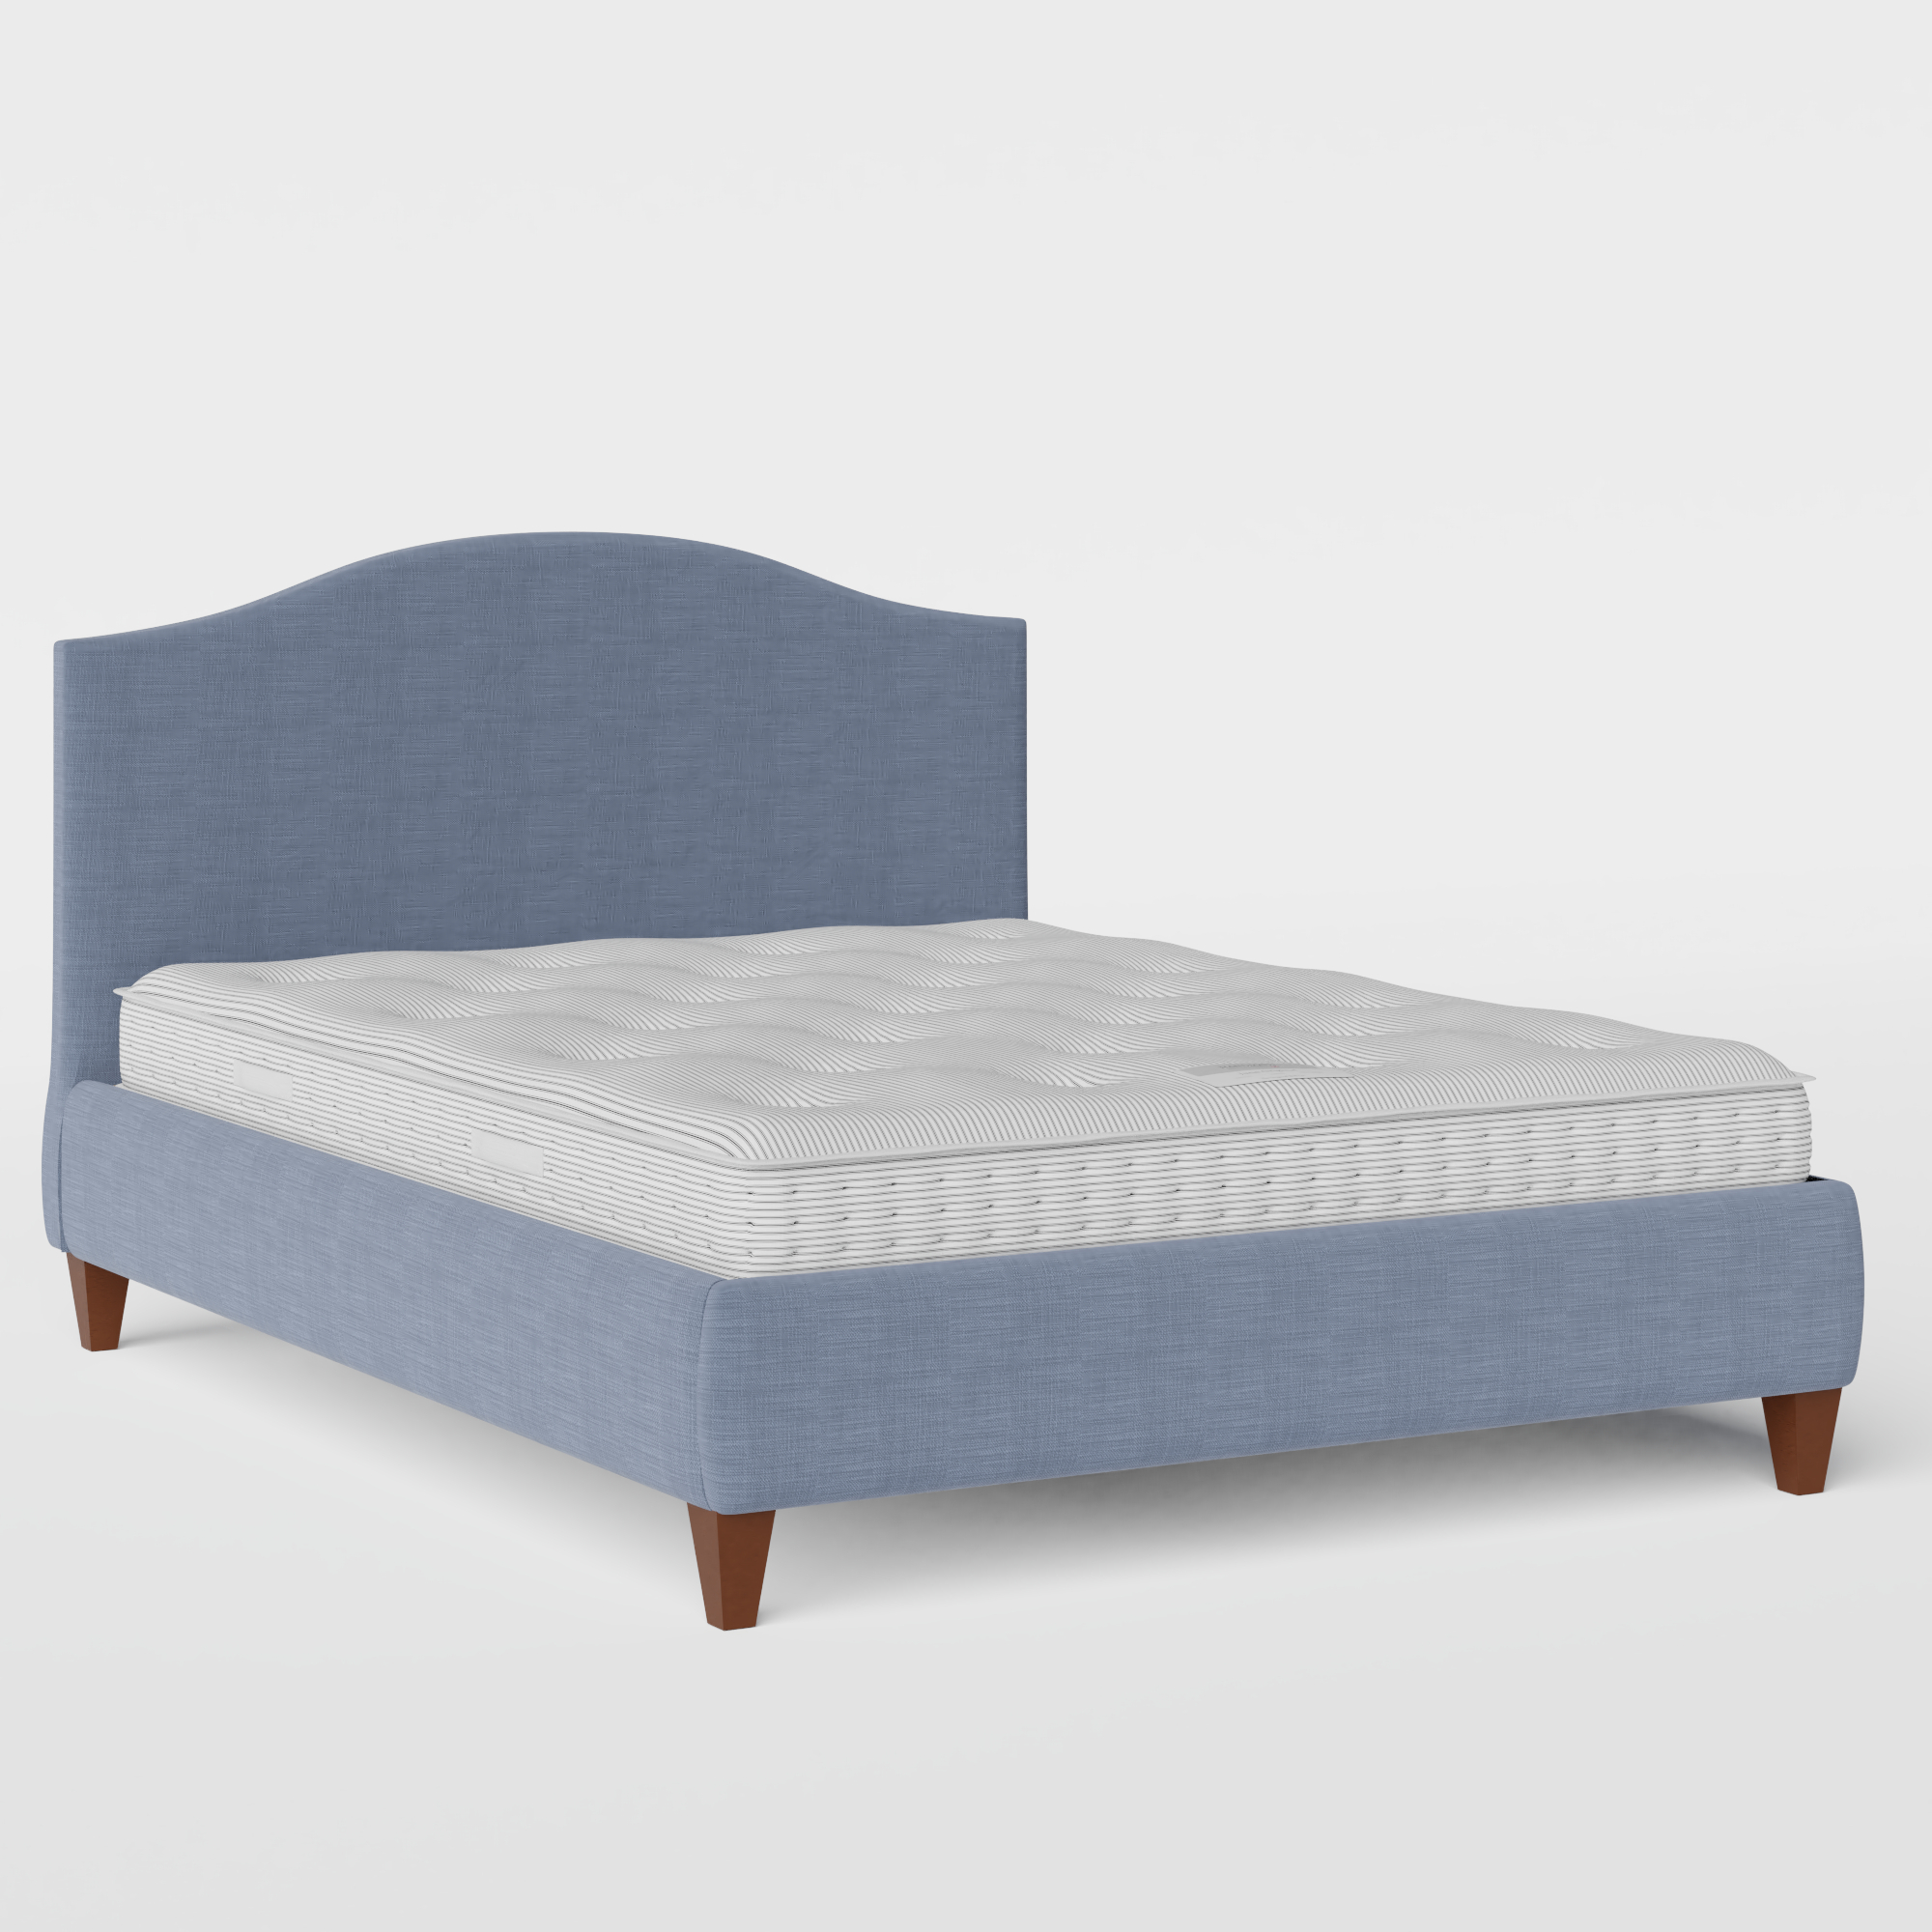 Daniella cama tapizada en tela azul